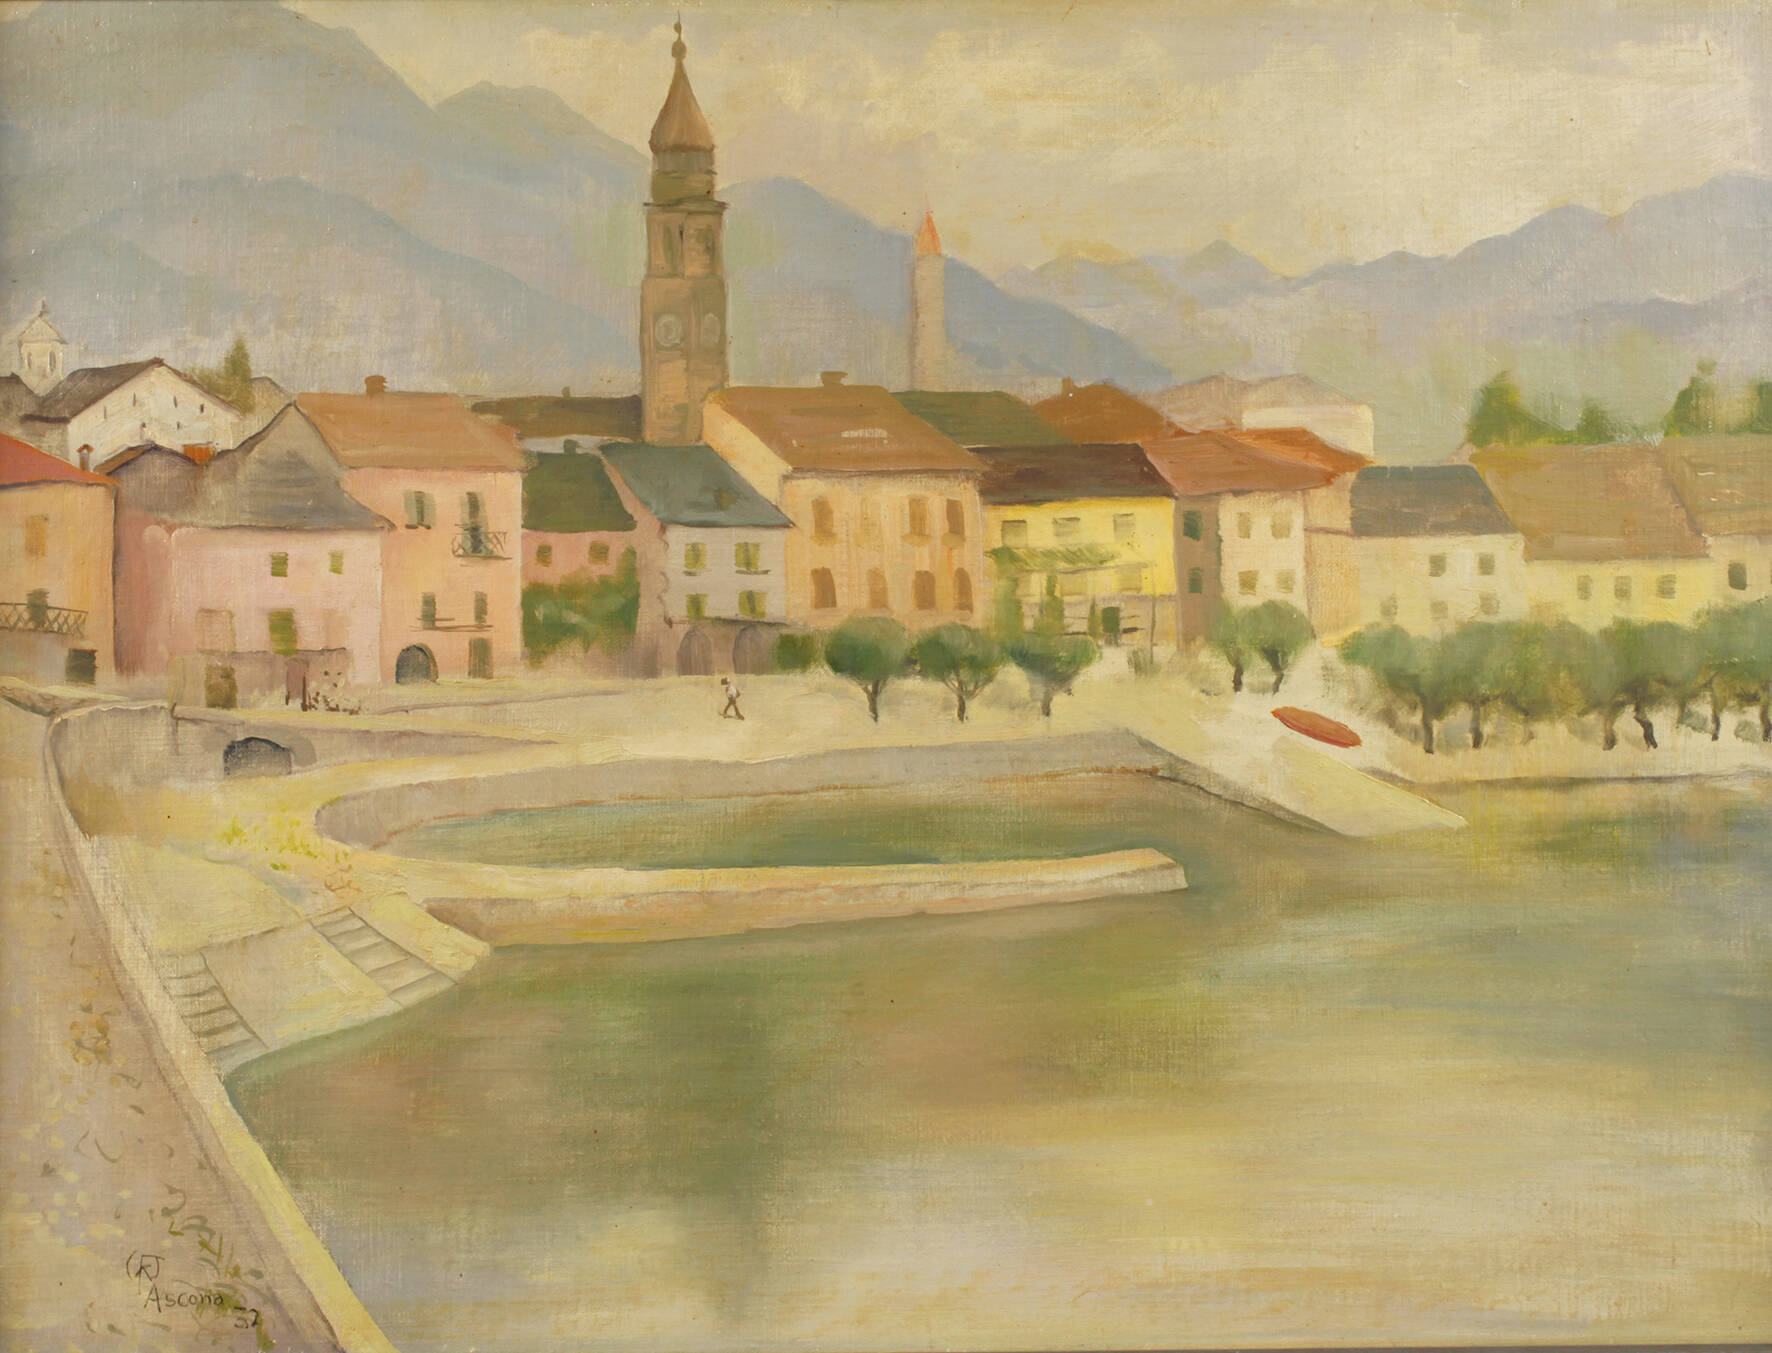 Werner Fechner, "Ascona"